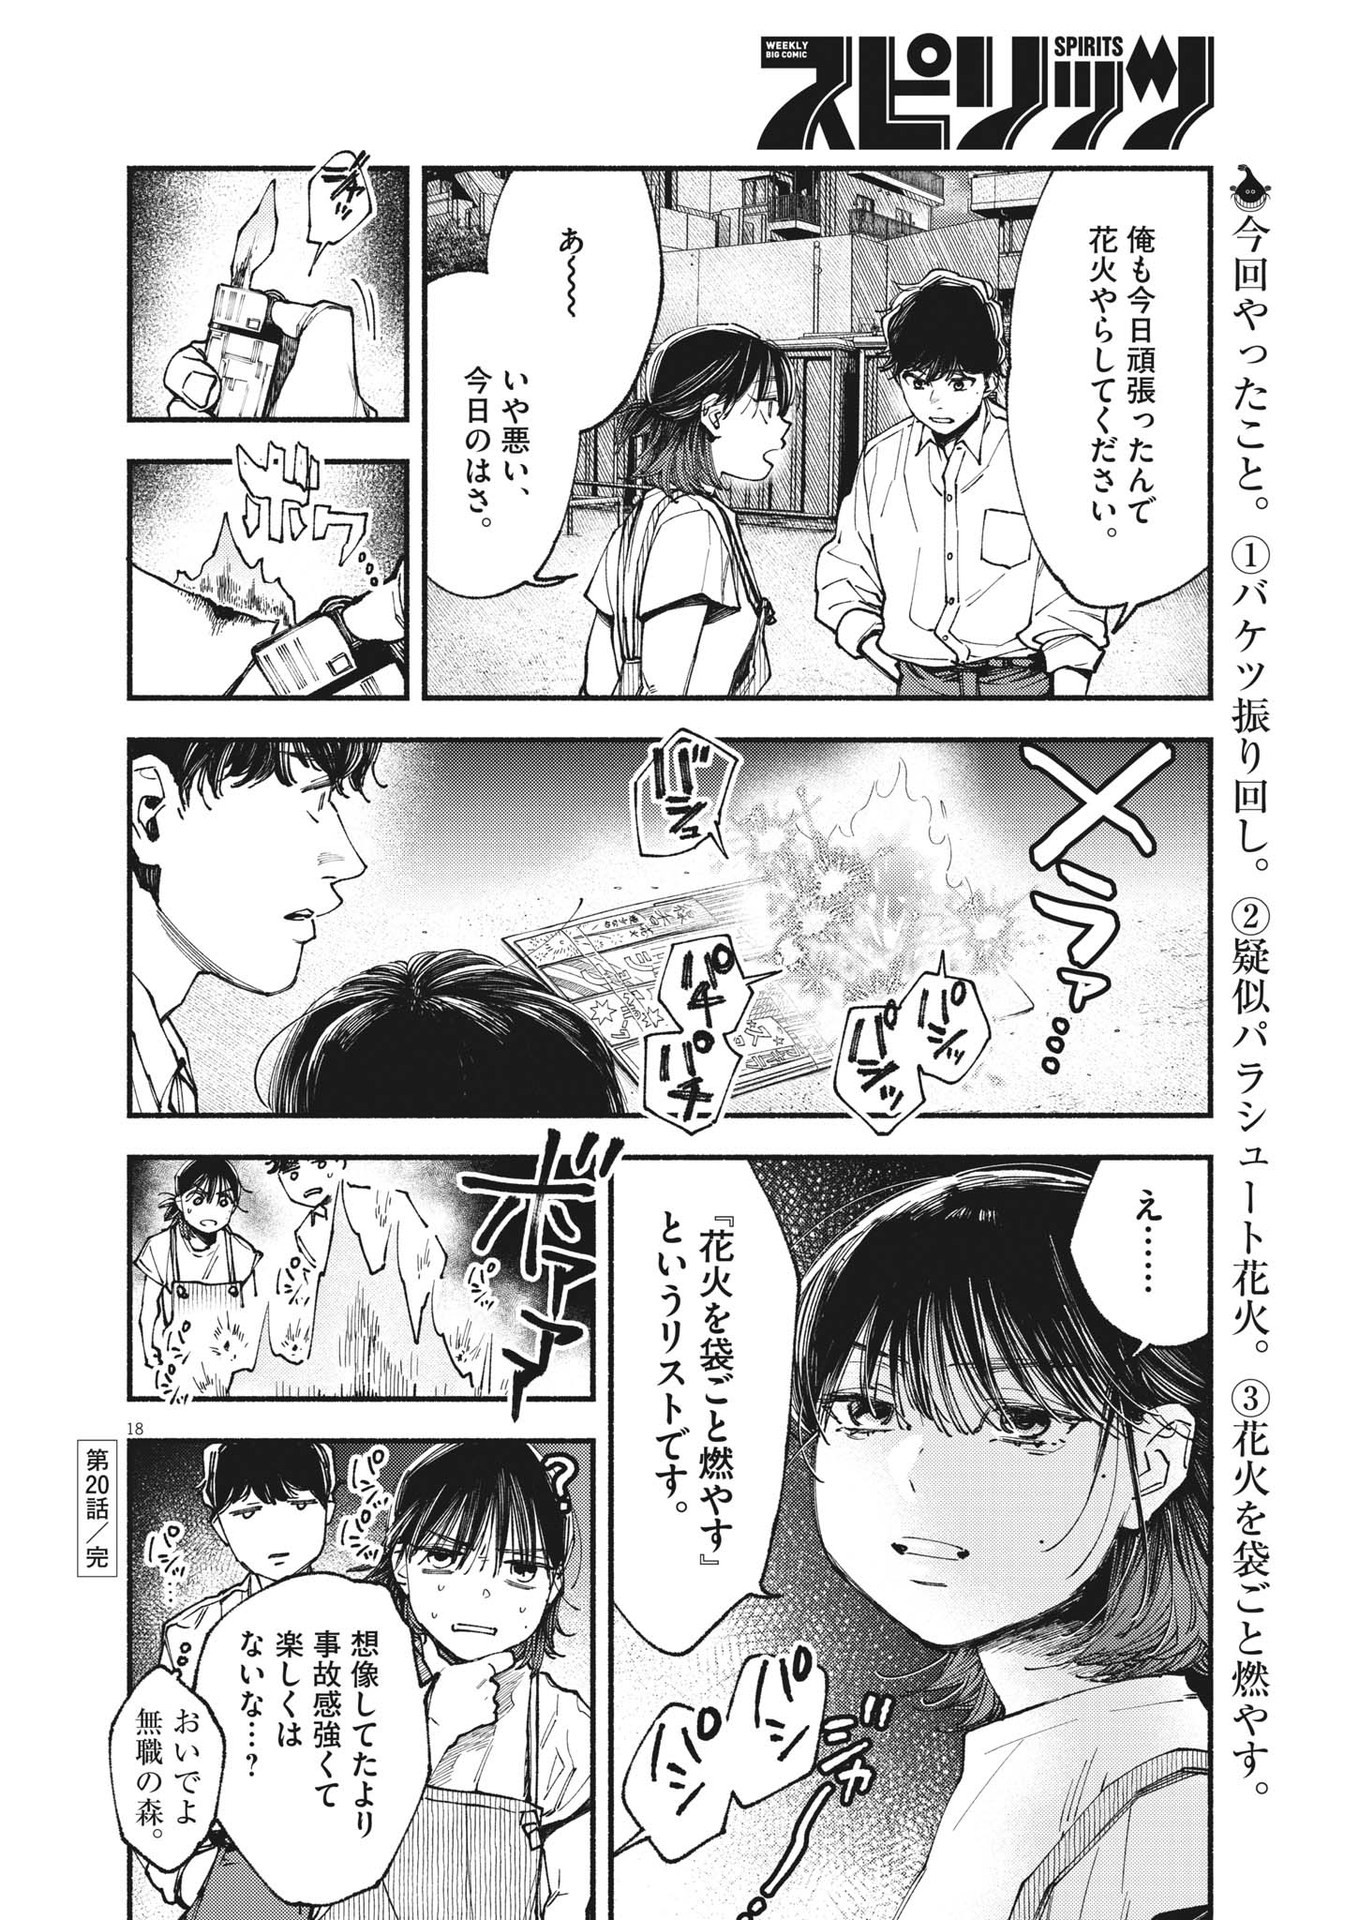 Konoyo wa Tatakau Kachi ga Aru  - Chapter 20 - Page 18